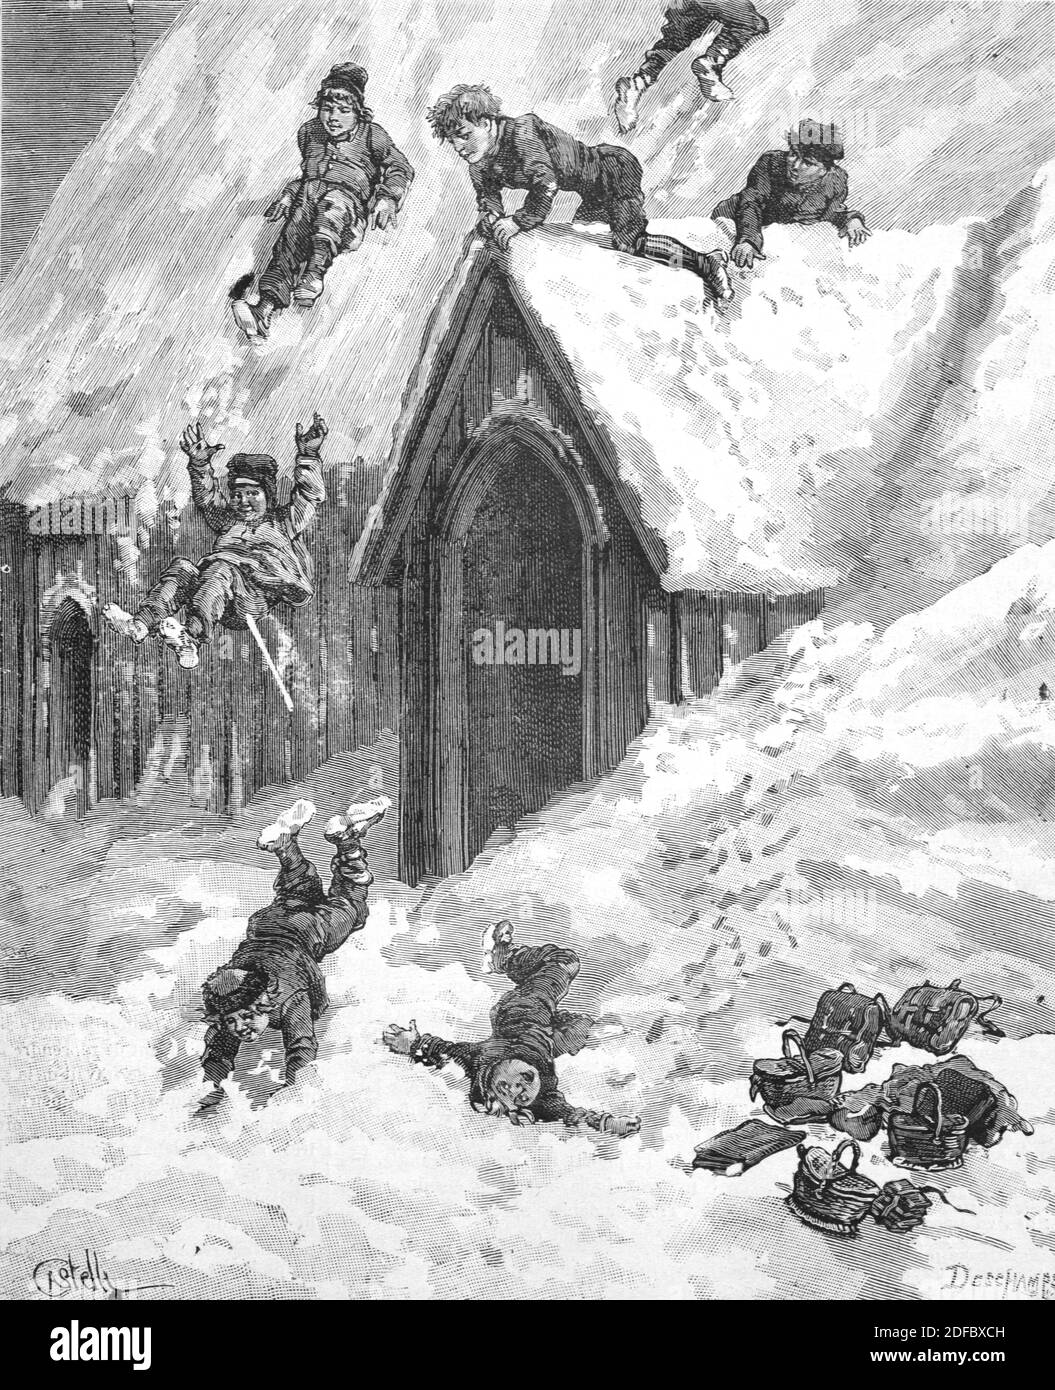 Enfants jouant à Snow Iceland (Engr Castelli 1884) Gravure ou illustration vintage Banque D'Images